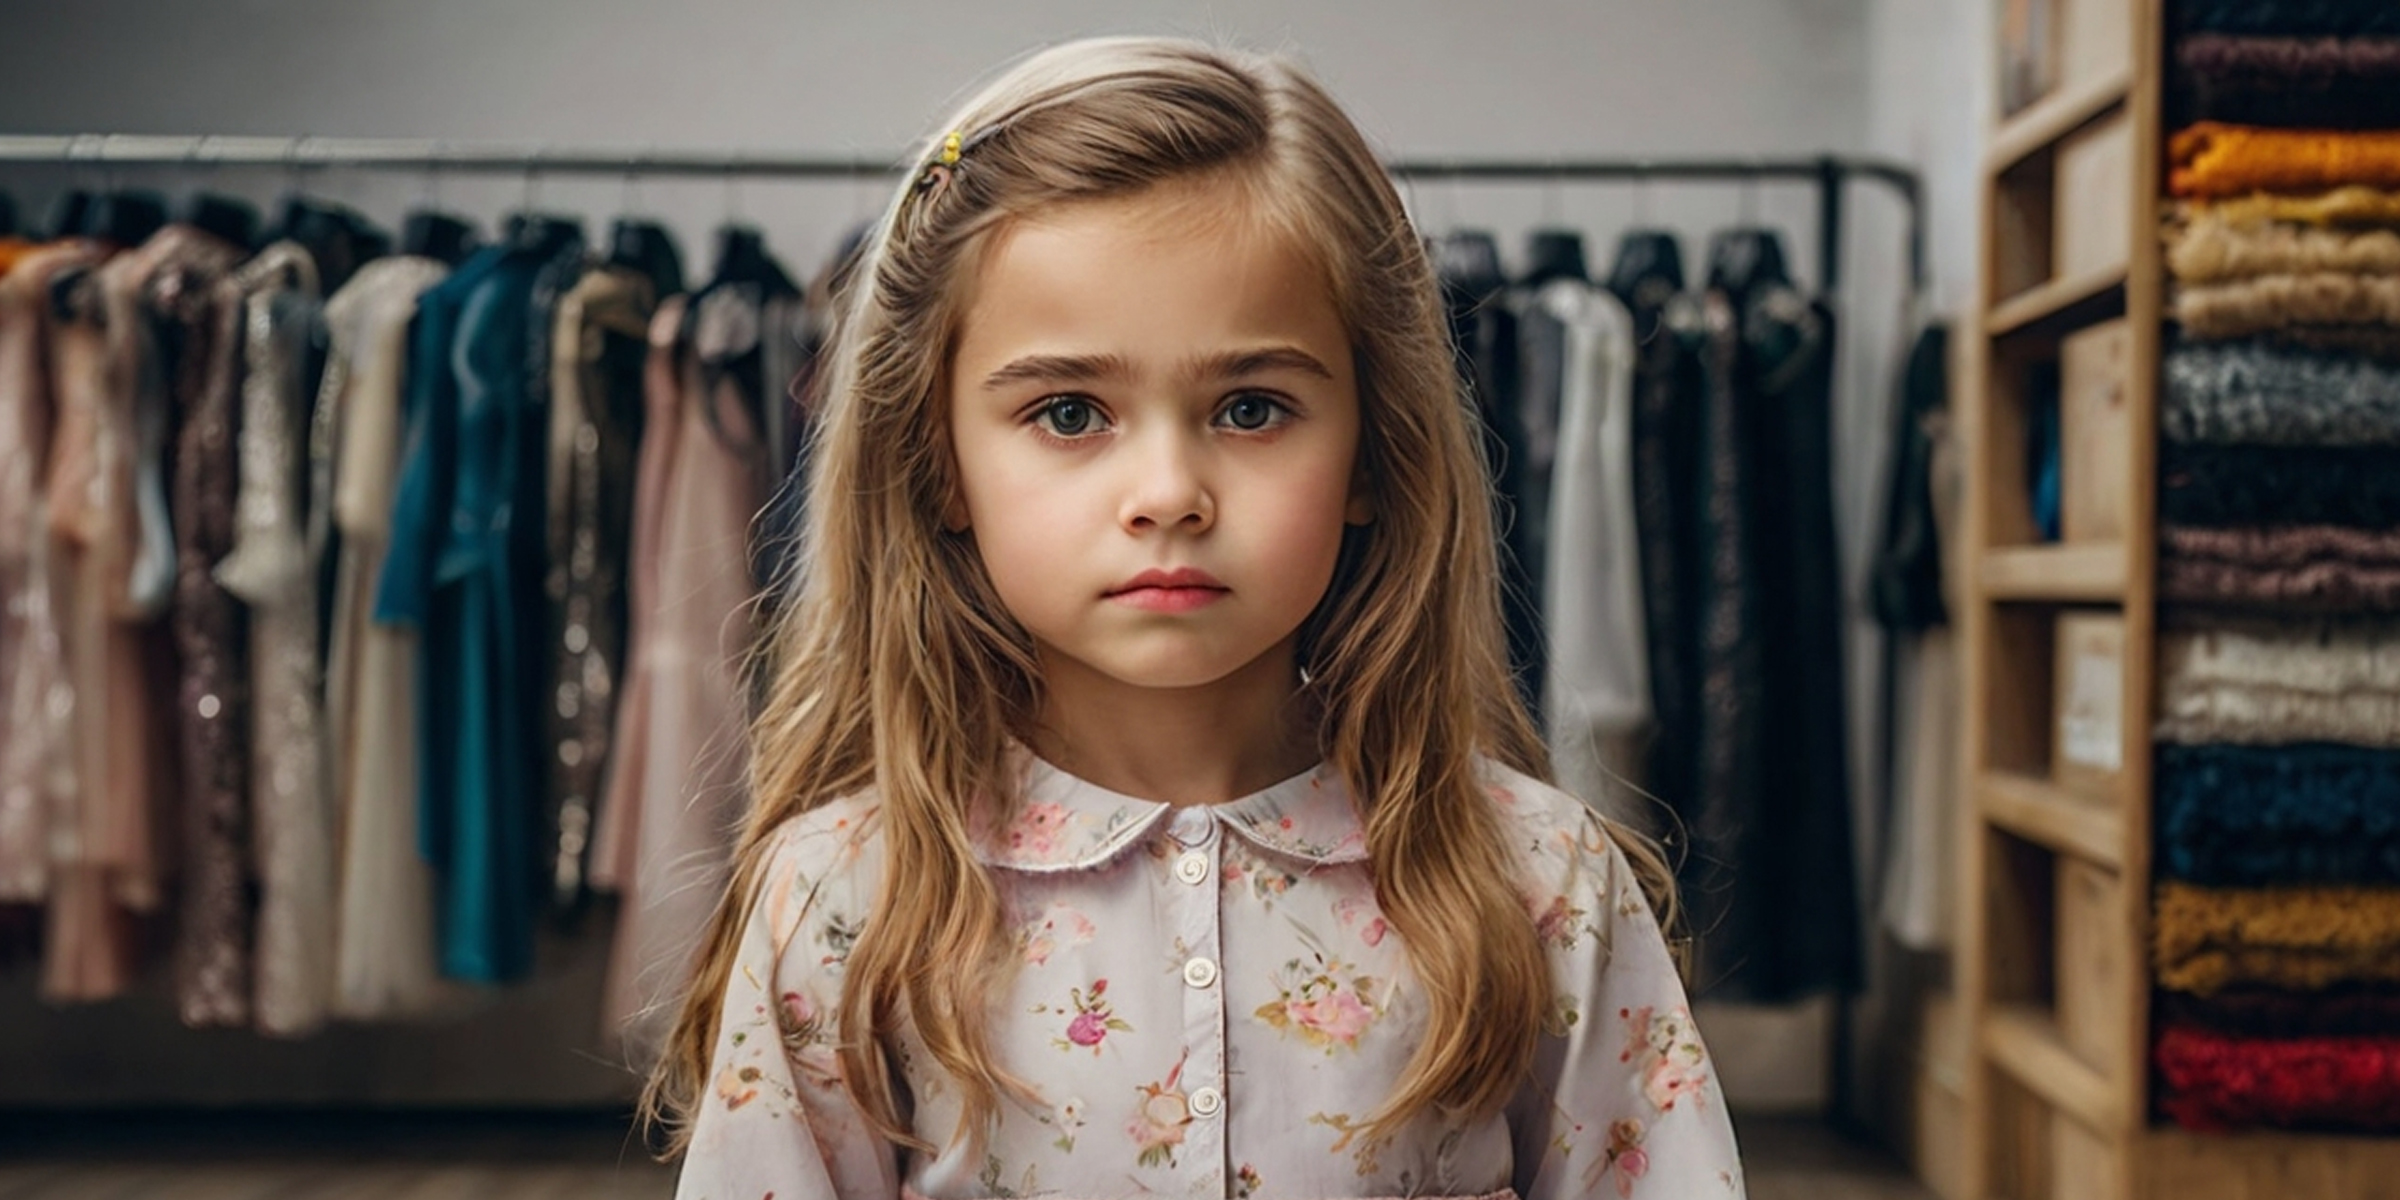 A sad little girl | Source: Shutterstock